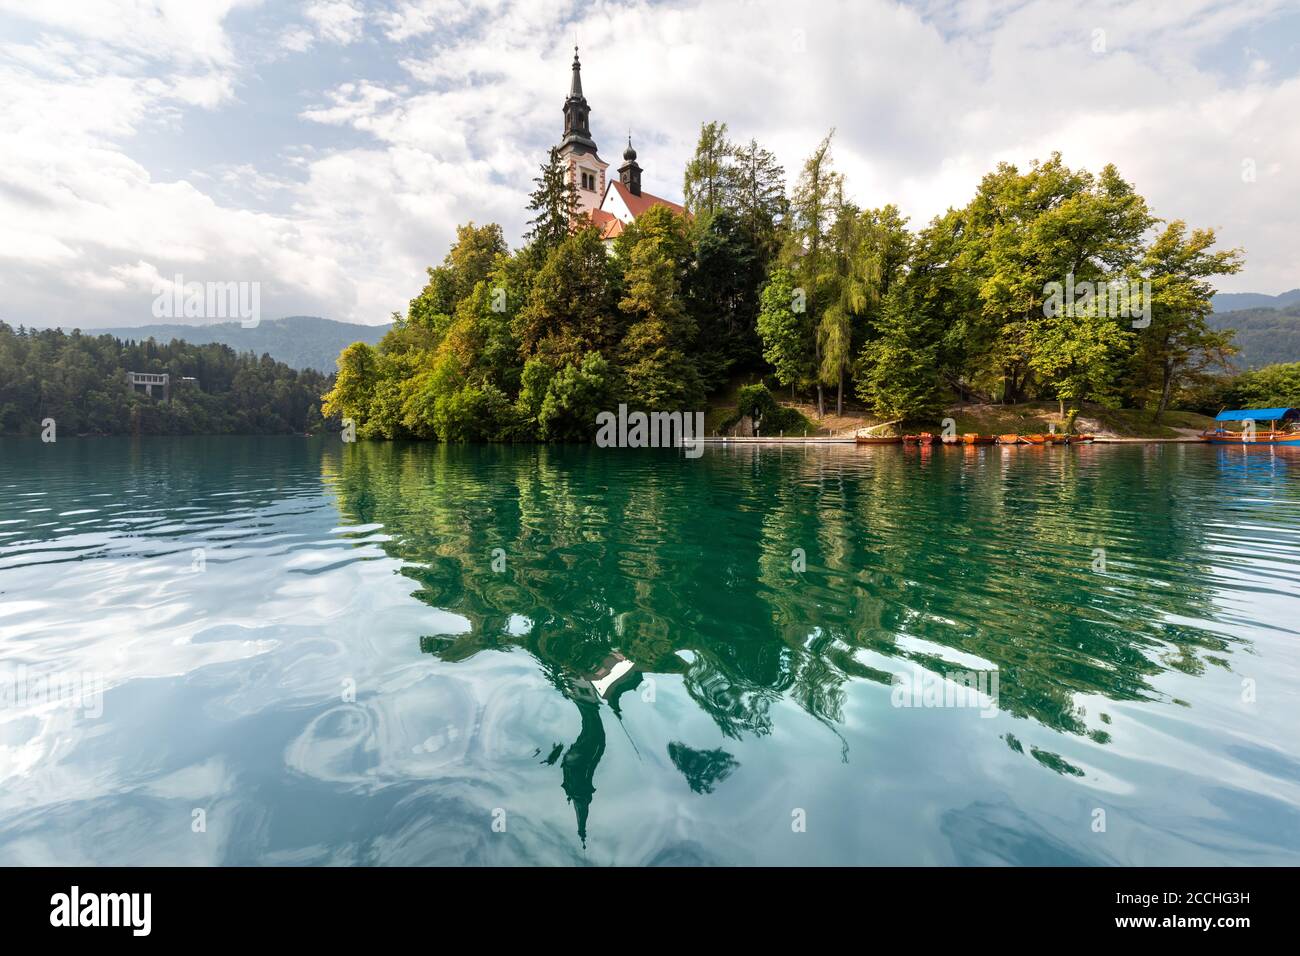 Die kleine Insel in der Mitte des slowenischen Sees von Bled, umgeben von Vegetation, reflektiert auf dem Wasser Stockfoto